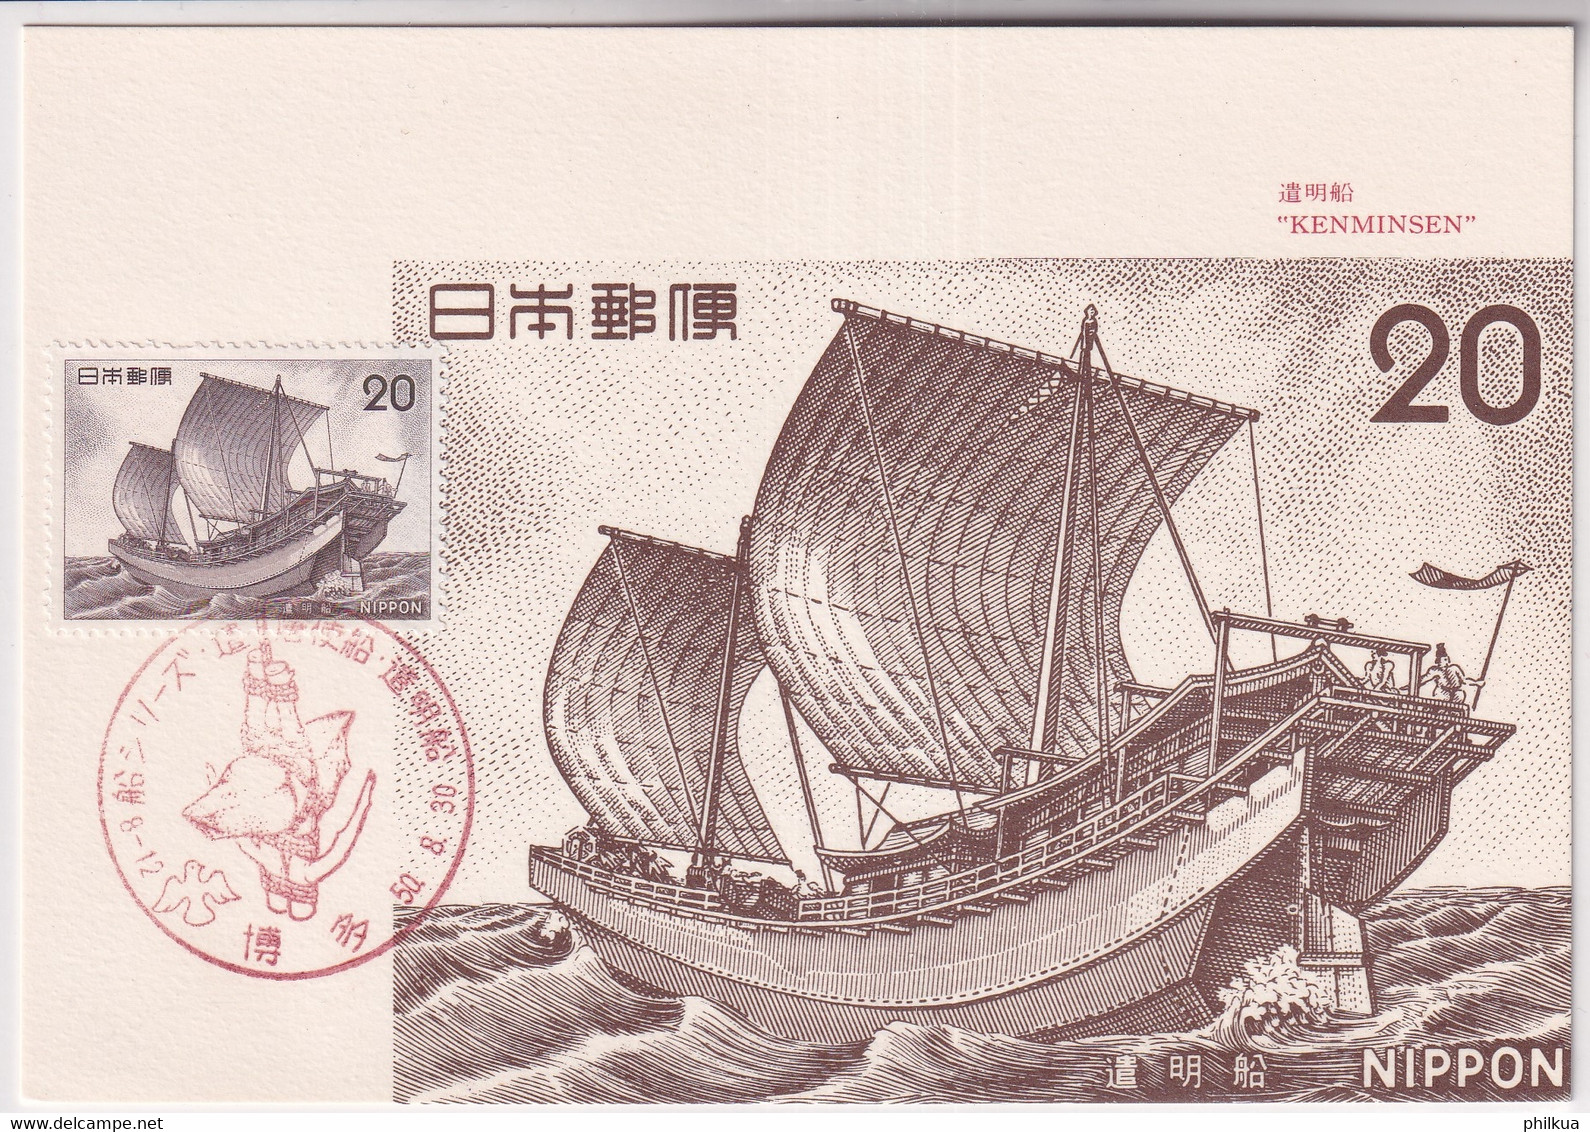 Japan - Schiffahrt: Segelschiffe, Boote - Expédition: Voiliers, Bateaux - Shipping: Sailing Ships, Boats - Maritiem